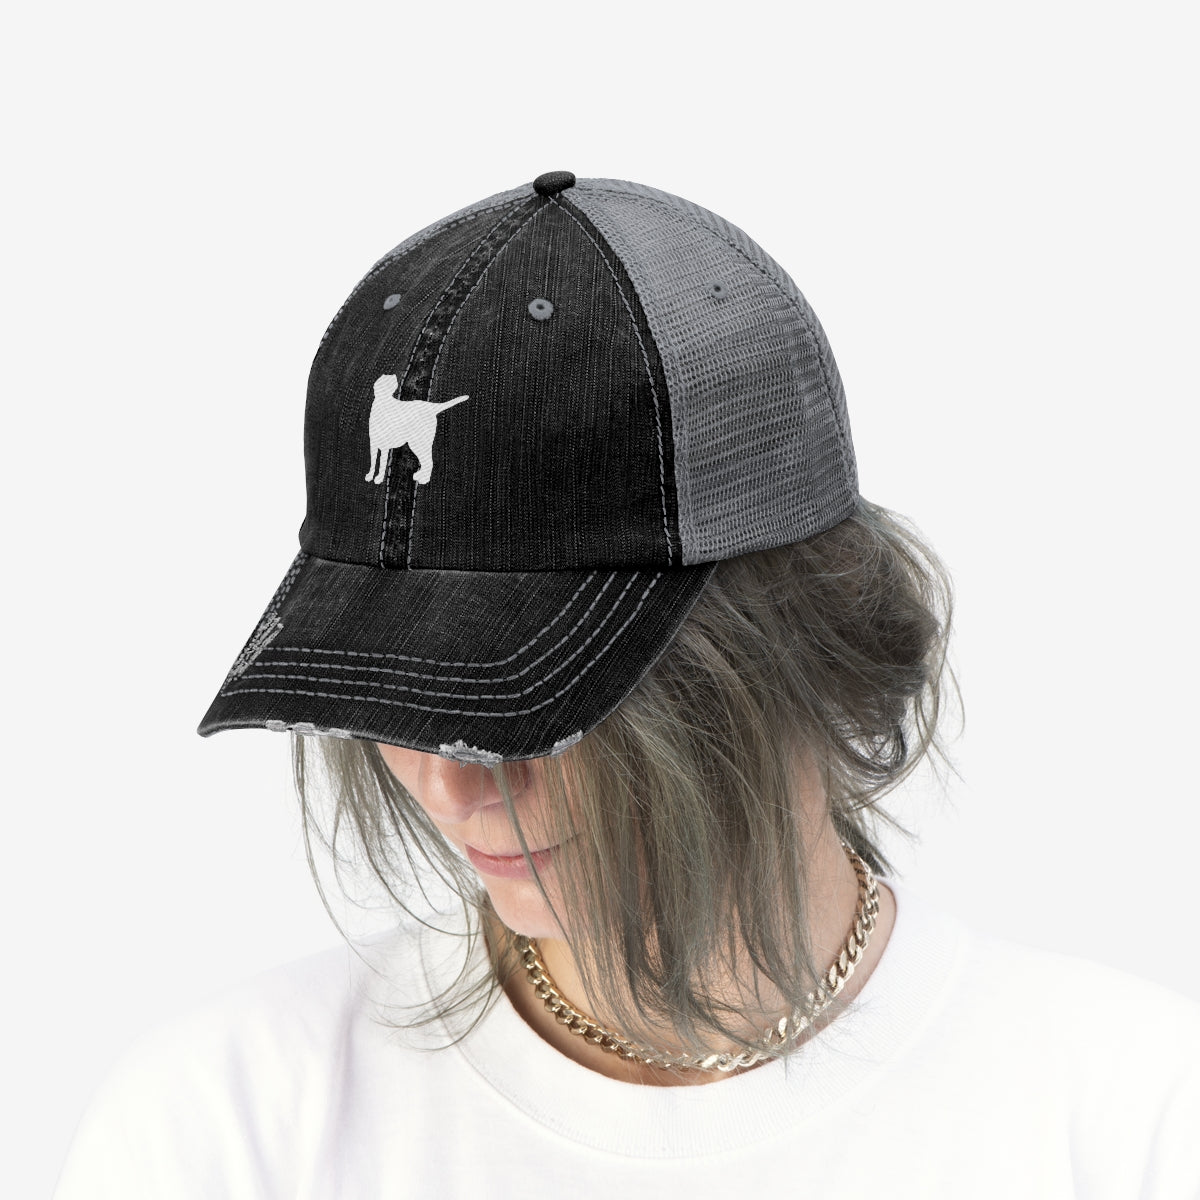 Lab Silhouette - Unisex Trucker Hat